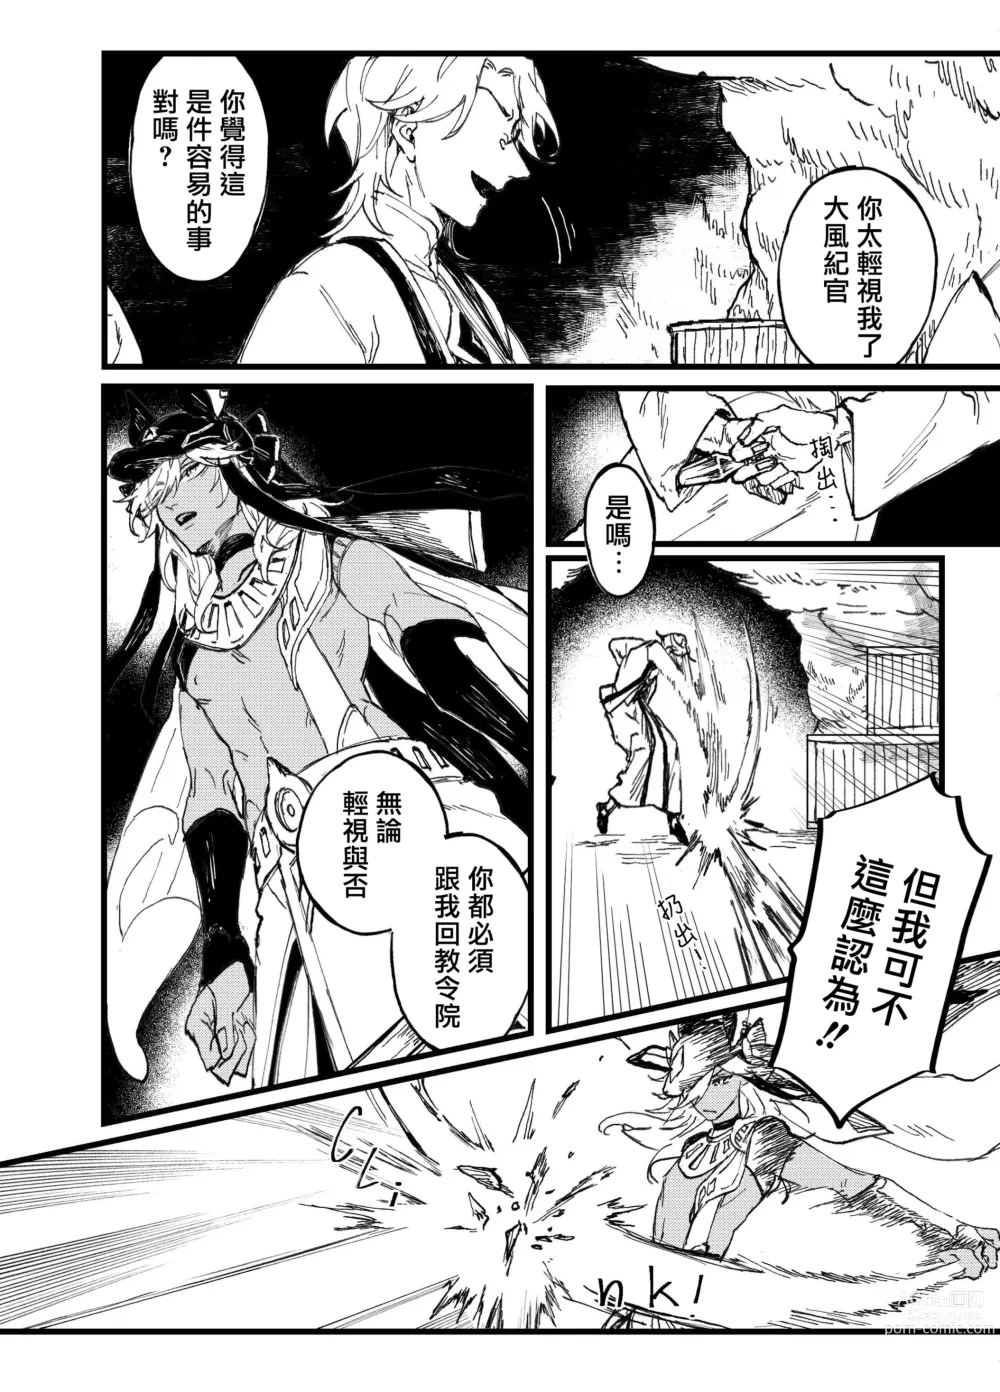 Page 10 of doujinshi Overheat